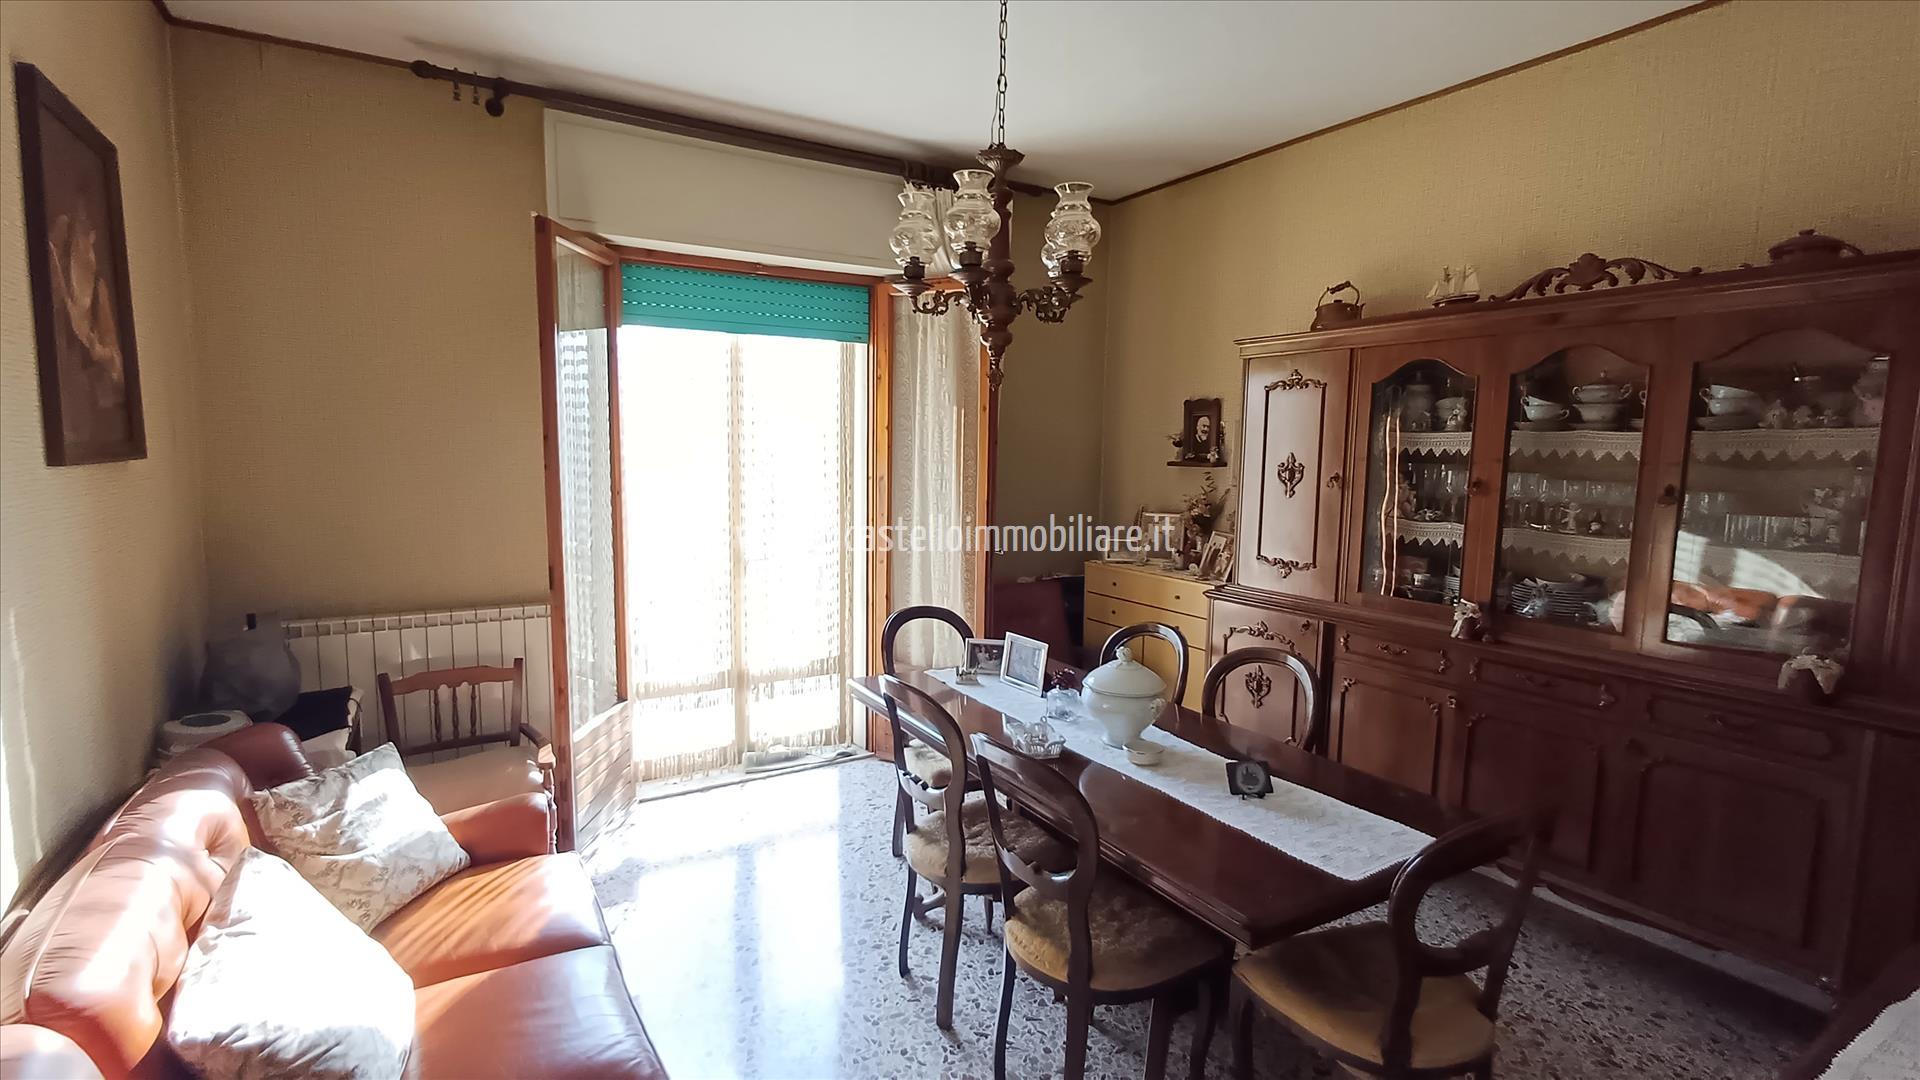 Appartamento in vendita a Sarteano, 2 locali, prezzo € 98.000 | PortaleAgenzieImmobiliari.it